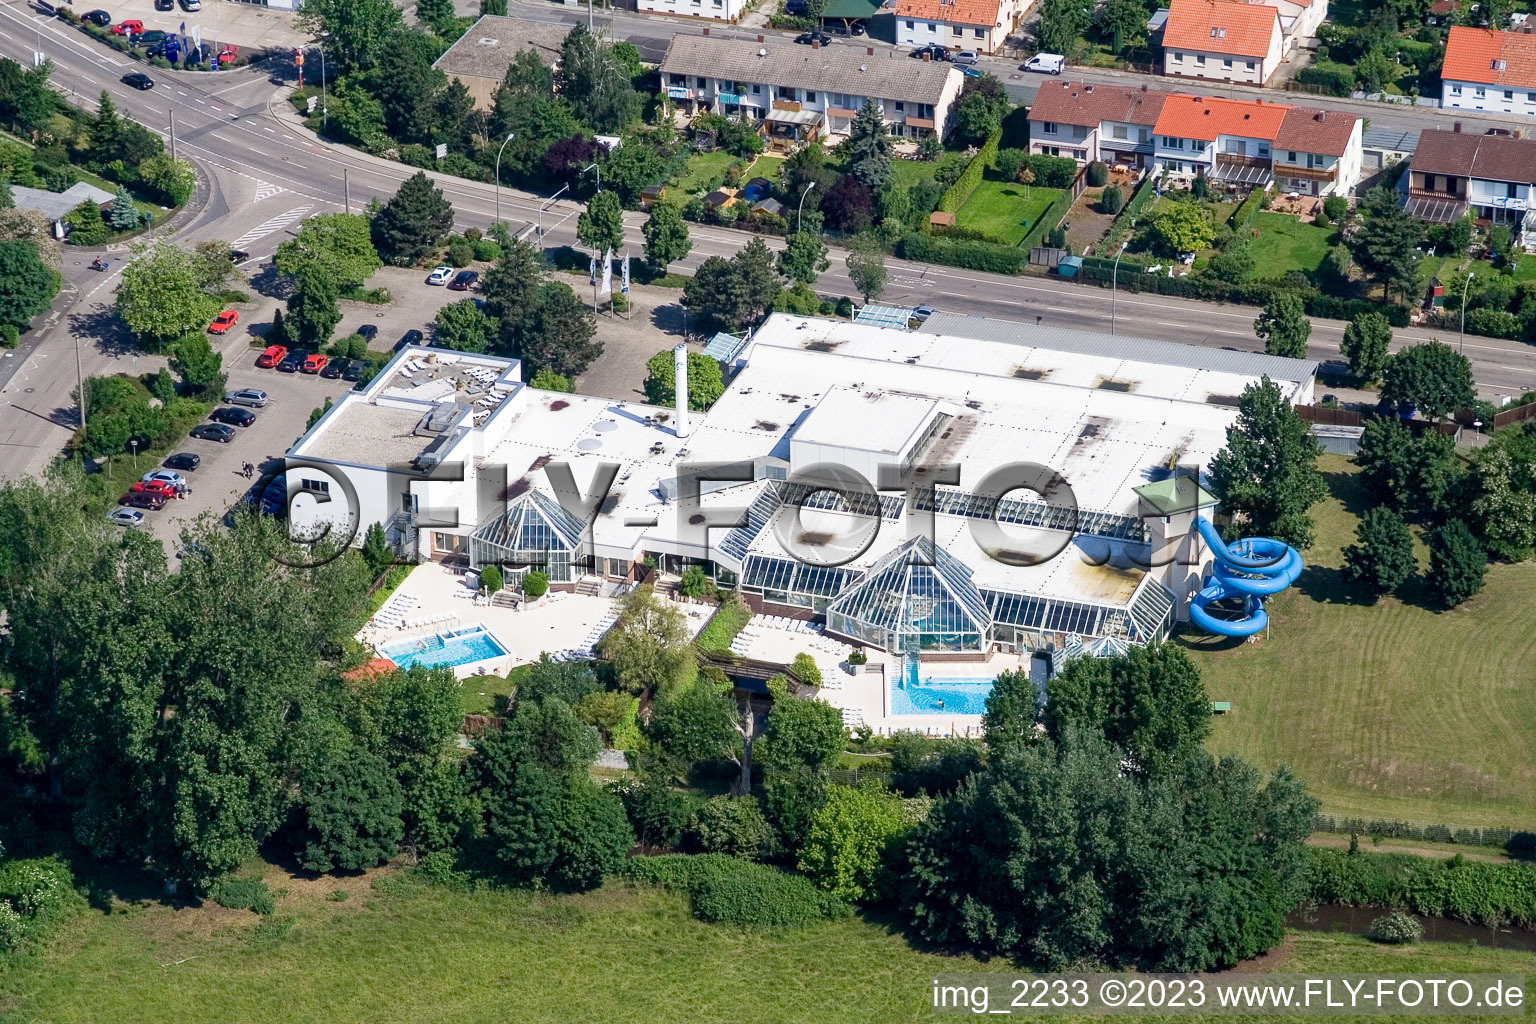 Vue aérienne de Piscine ludique de Landau La Ola à le quartier Queichheim in Landau in der Pfalz dans le département Rhénanie-Palatinat, Allemagne